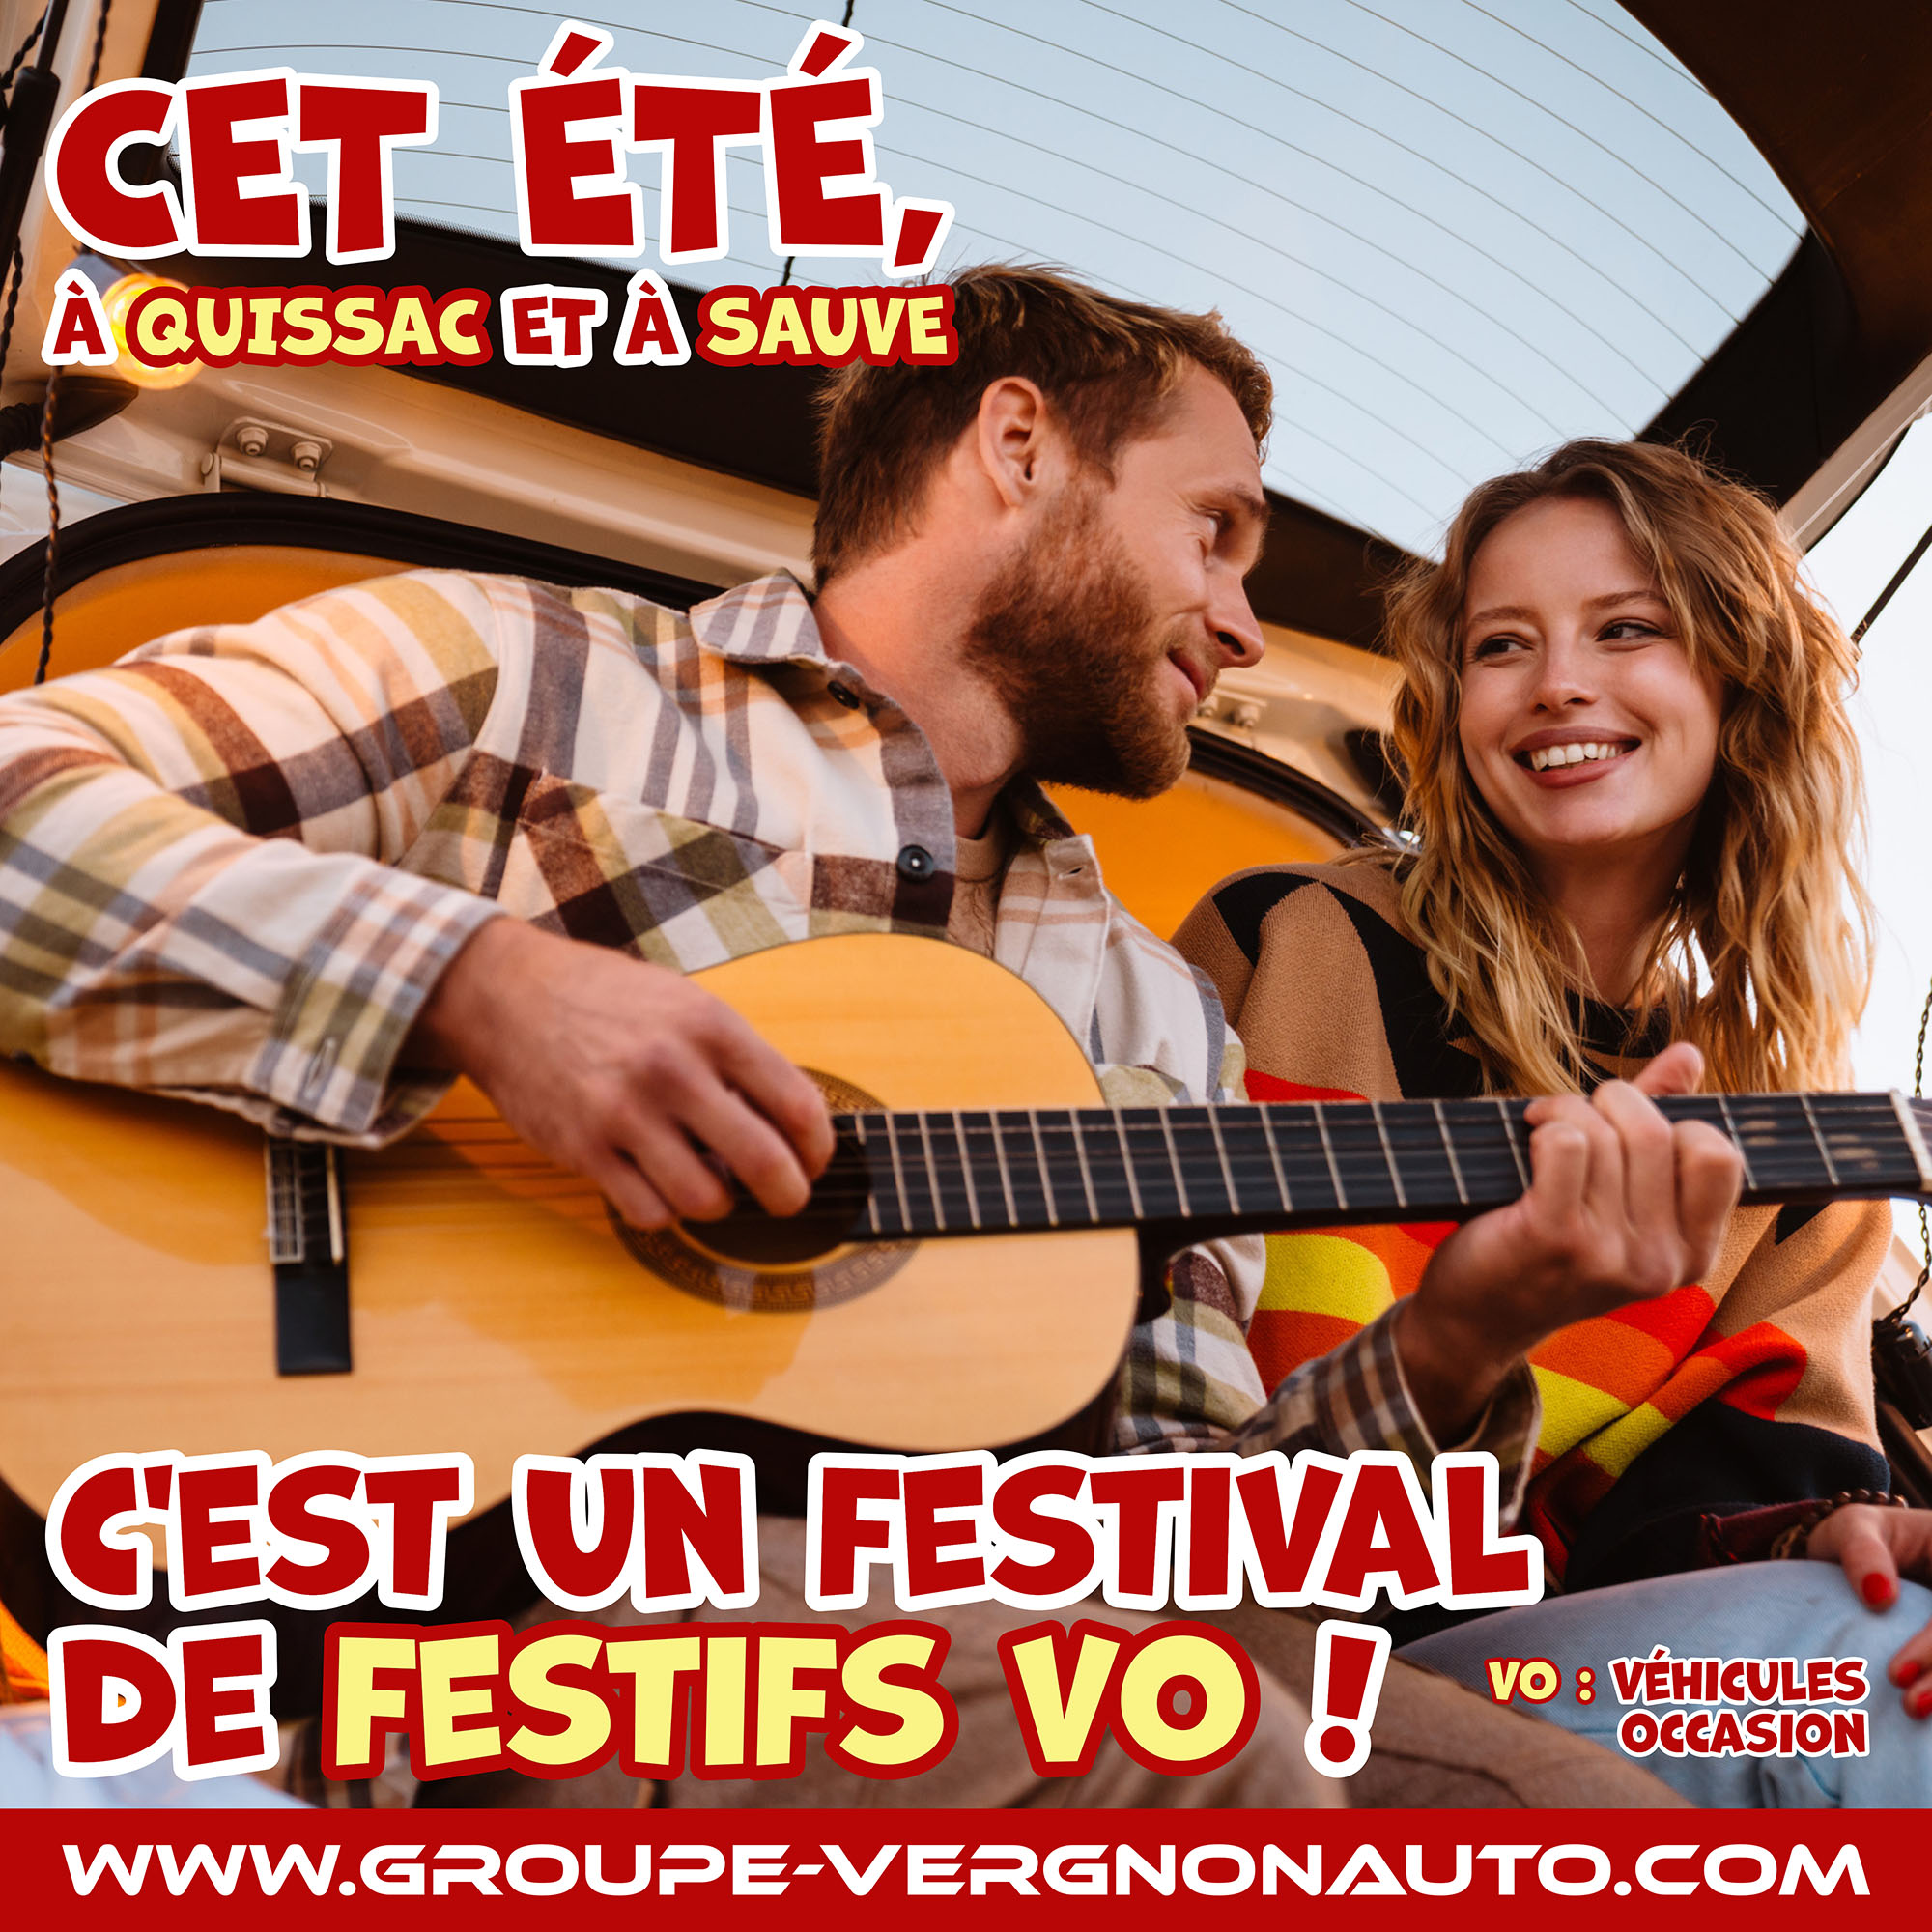 Renault, Dacia, Peugeot, Citroën et autres marques ! C'est un festival de festifs VO (véhicules occasion), révisés, garantis et au meilleur prix, à Quissac et à Sauve, dans le Gard !